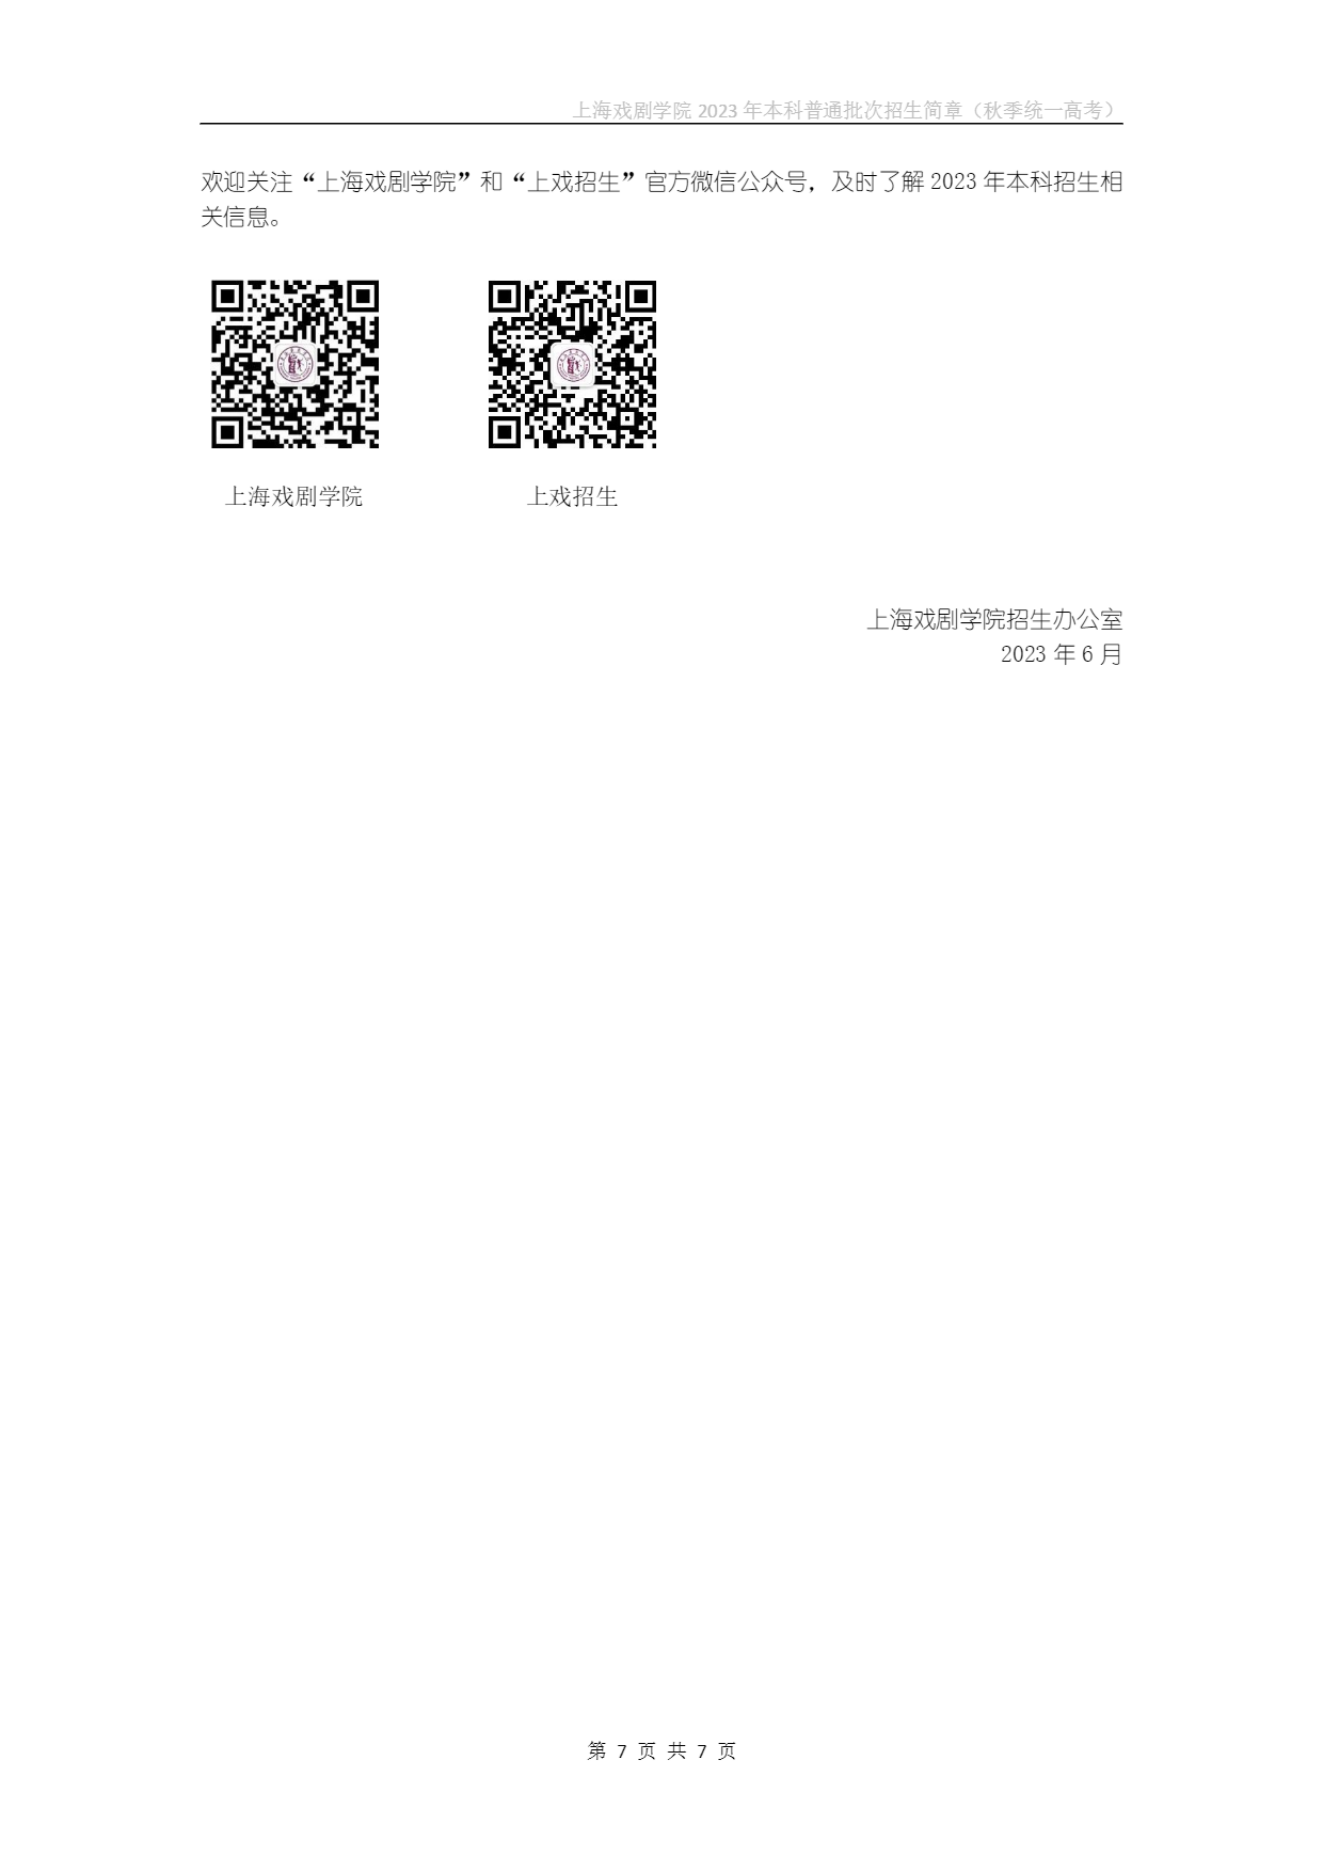 上海戏剧学院2023年本科普通批次招生简章（秋季统一高考）